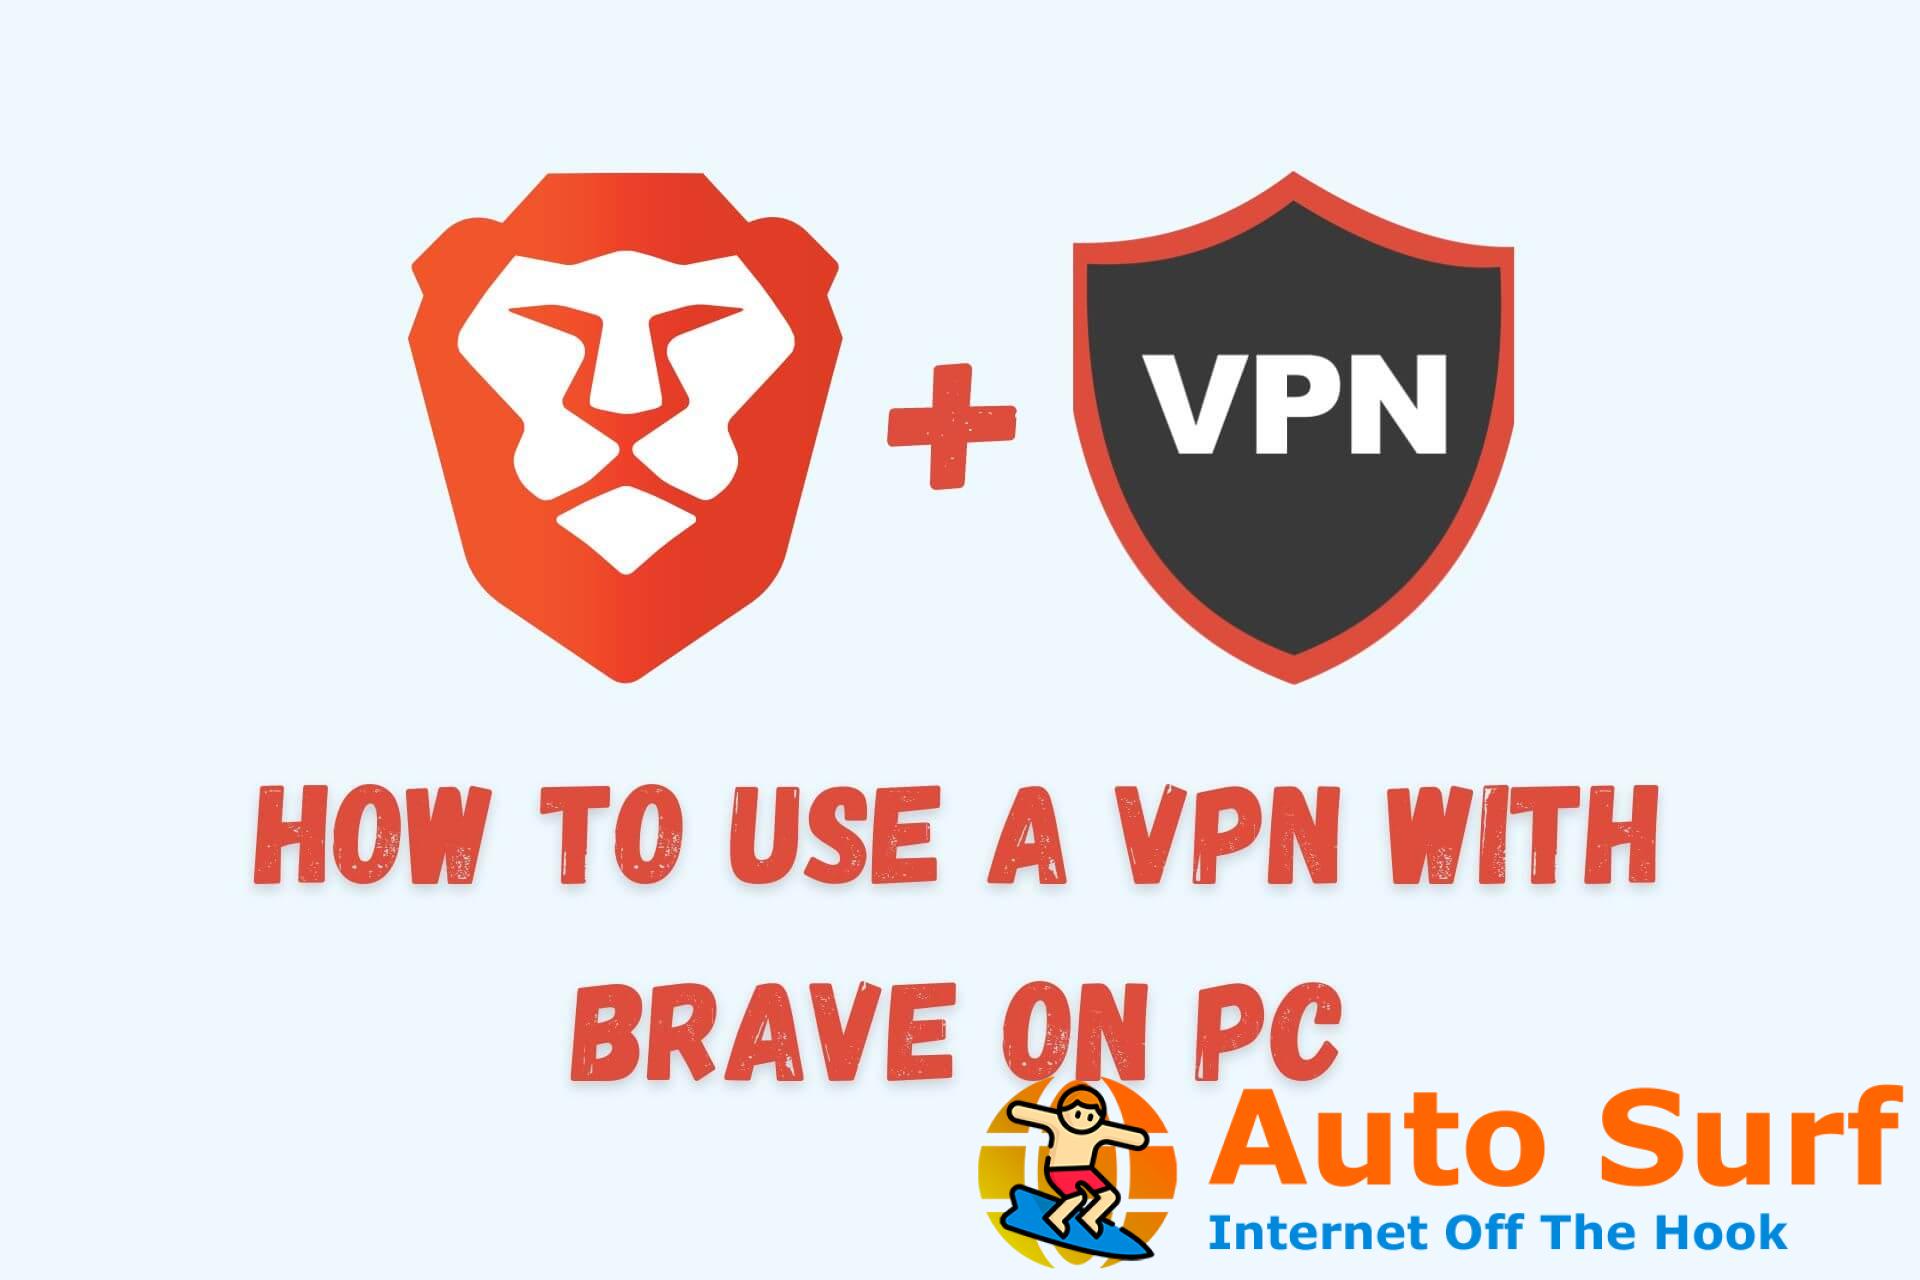 Cómo usar una VPN con Brave Browser en PC [The Proper Way]